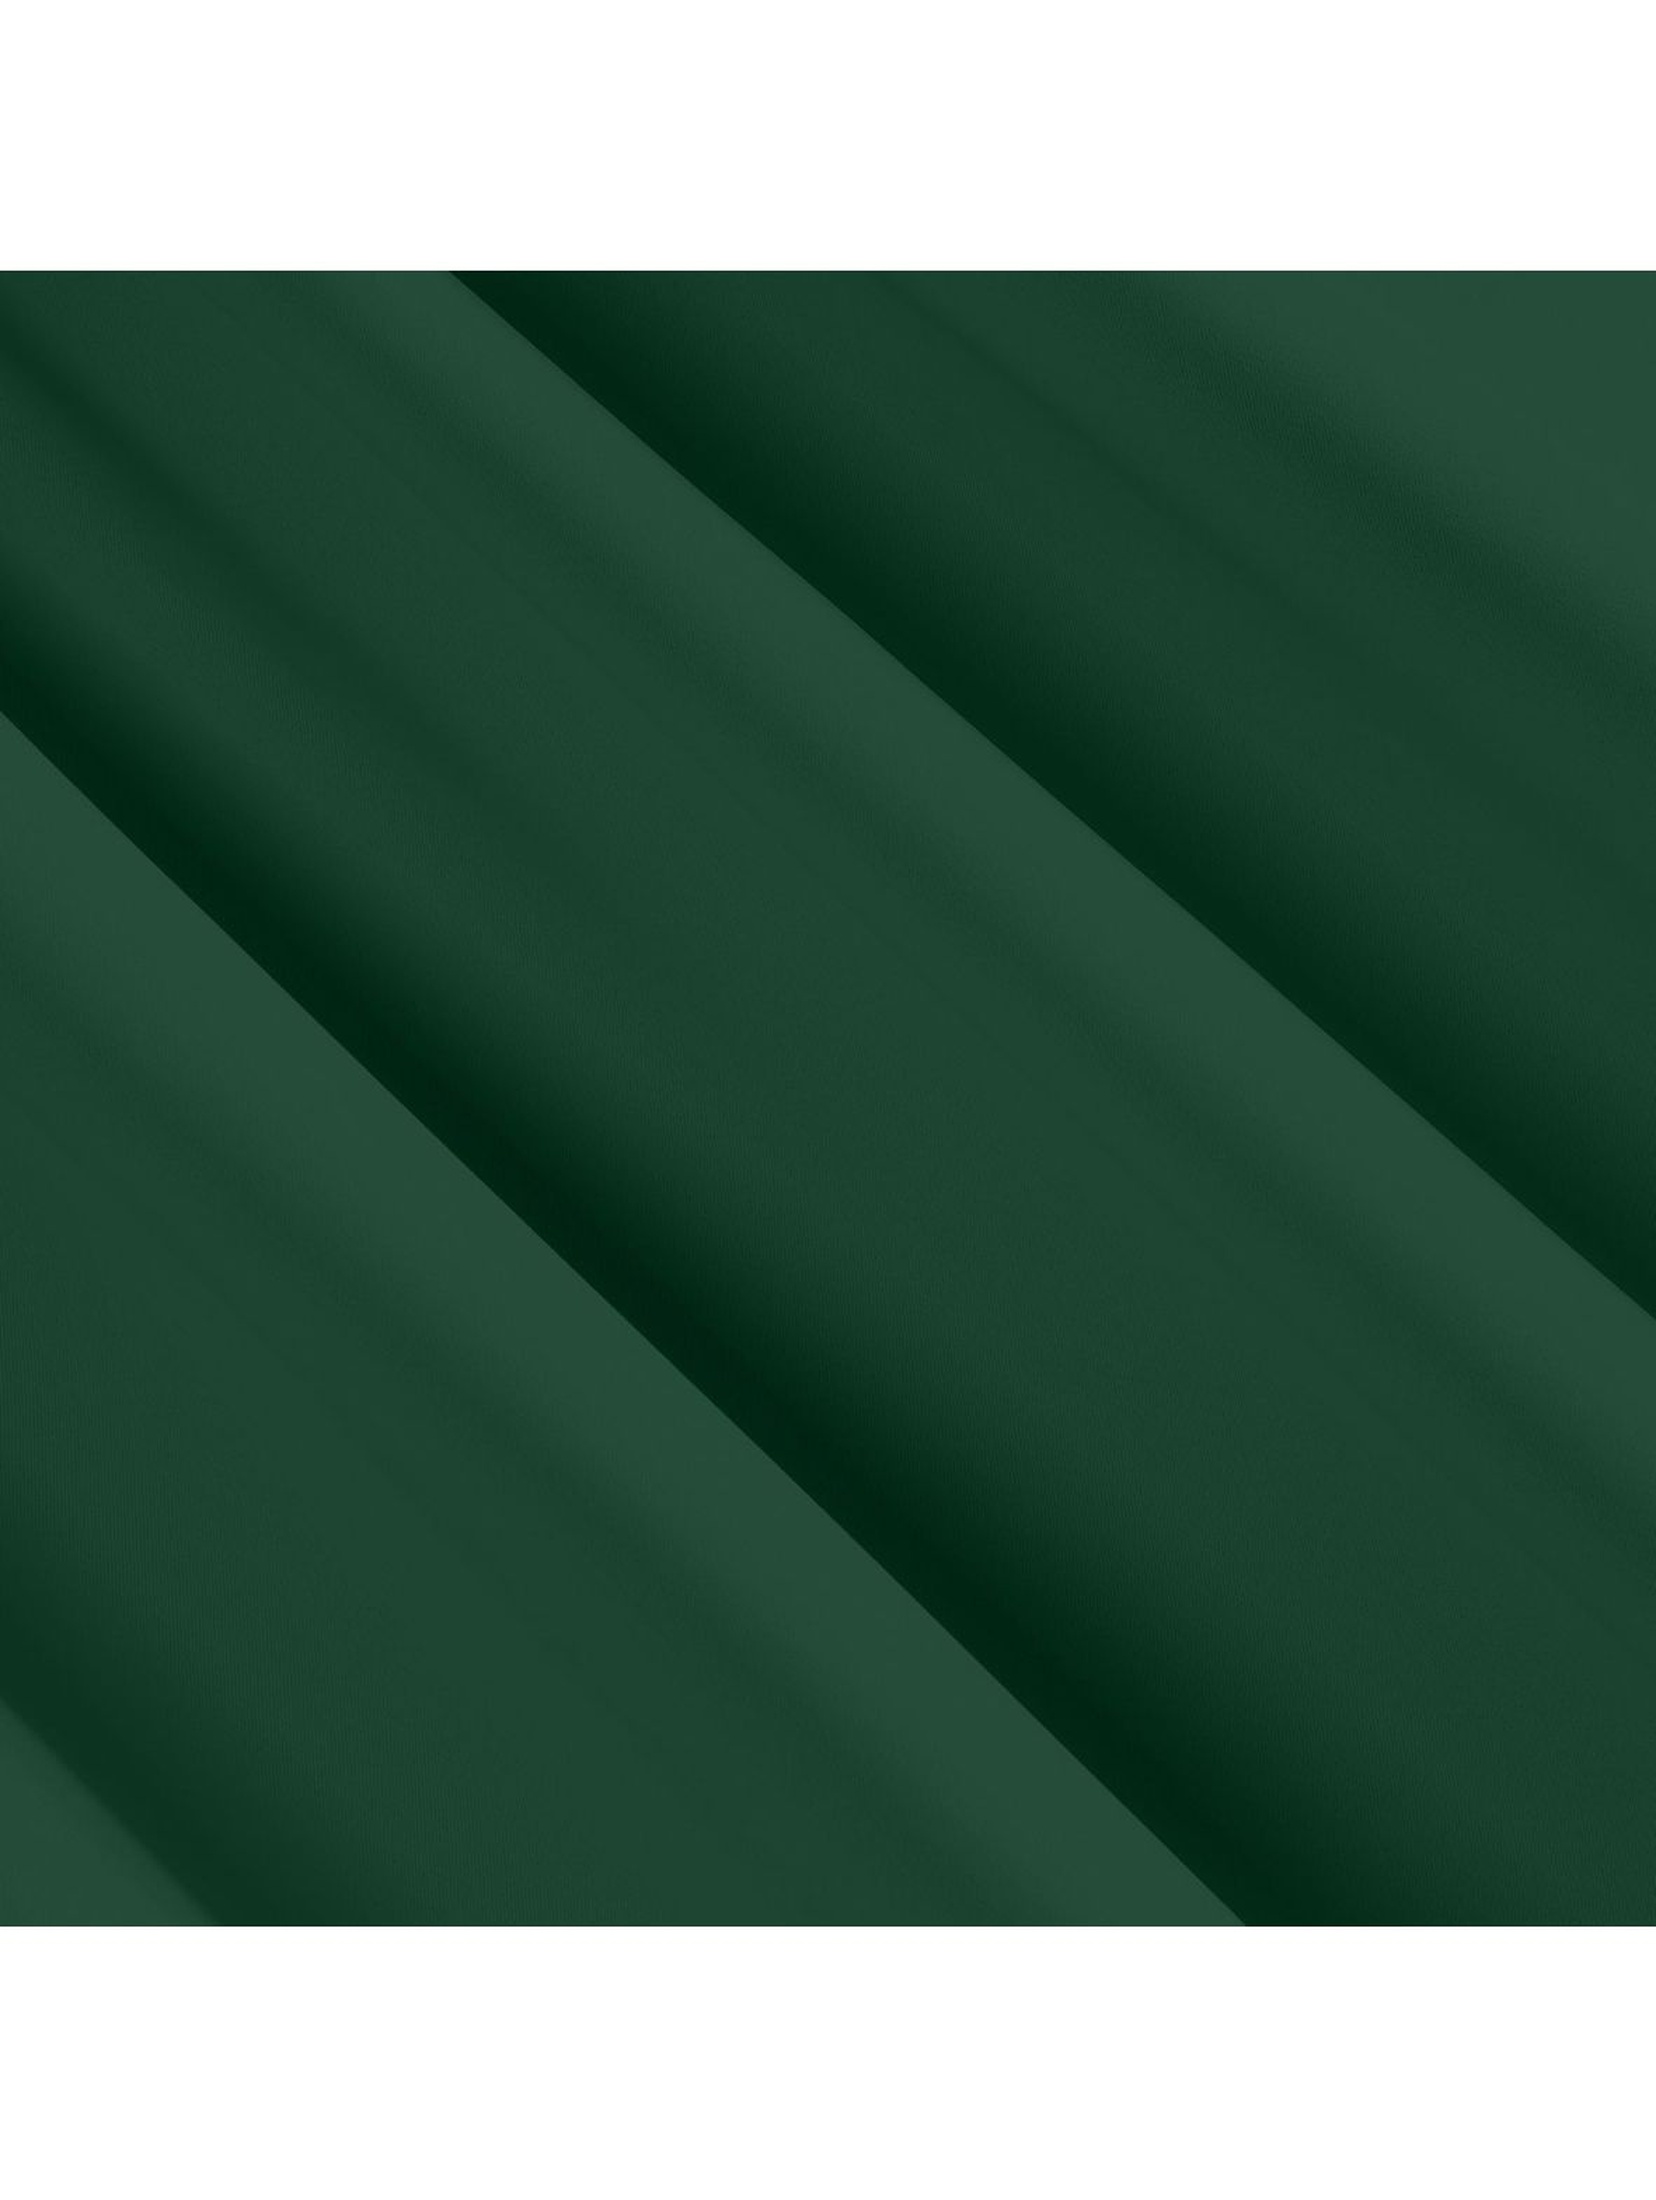 Zasłona jednokolorowa zaciemniająca - zielona -135x270cm